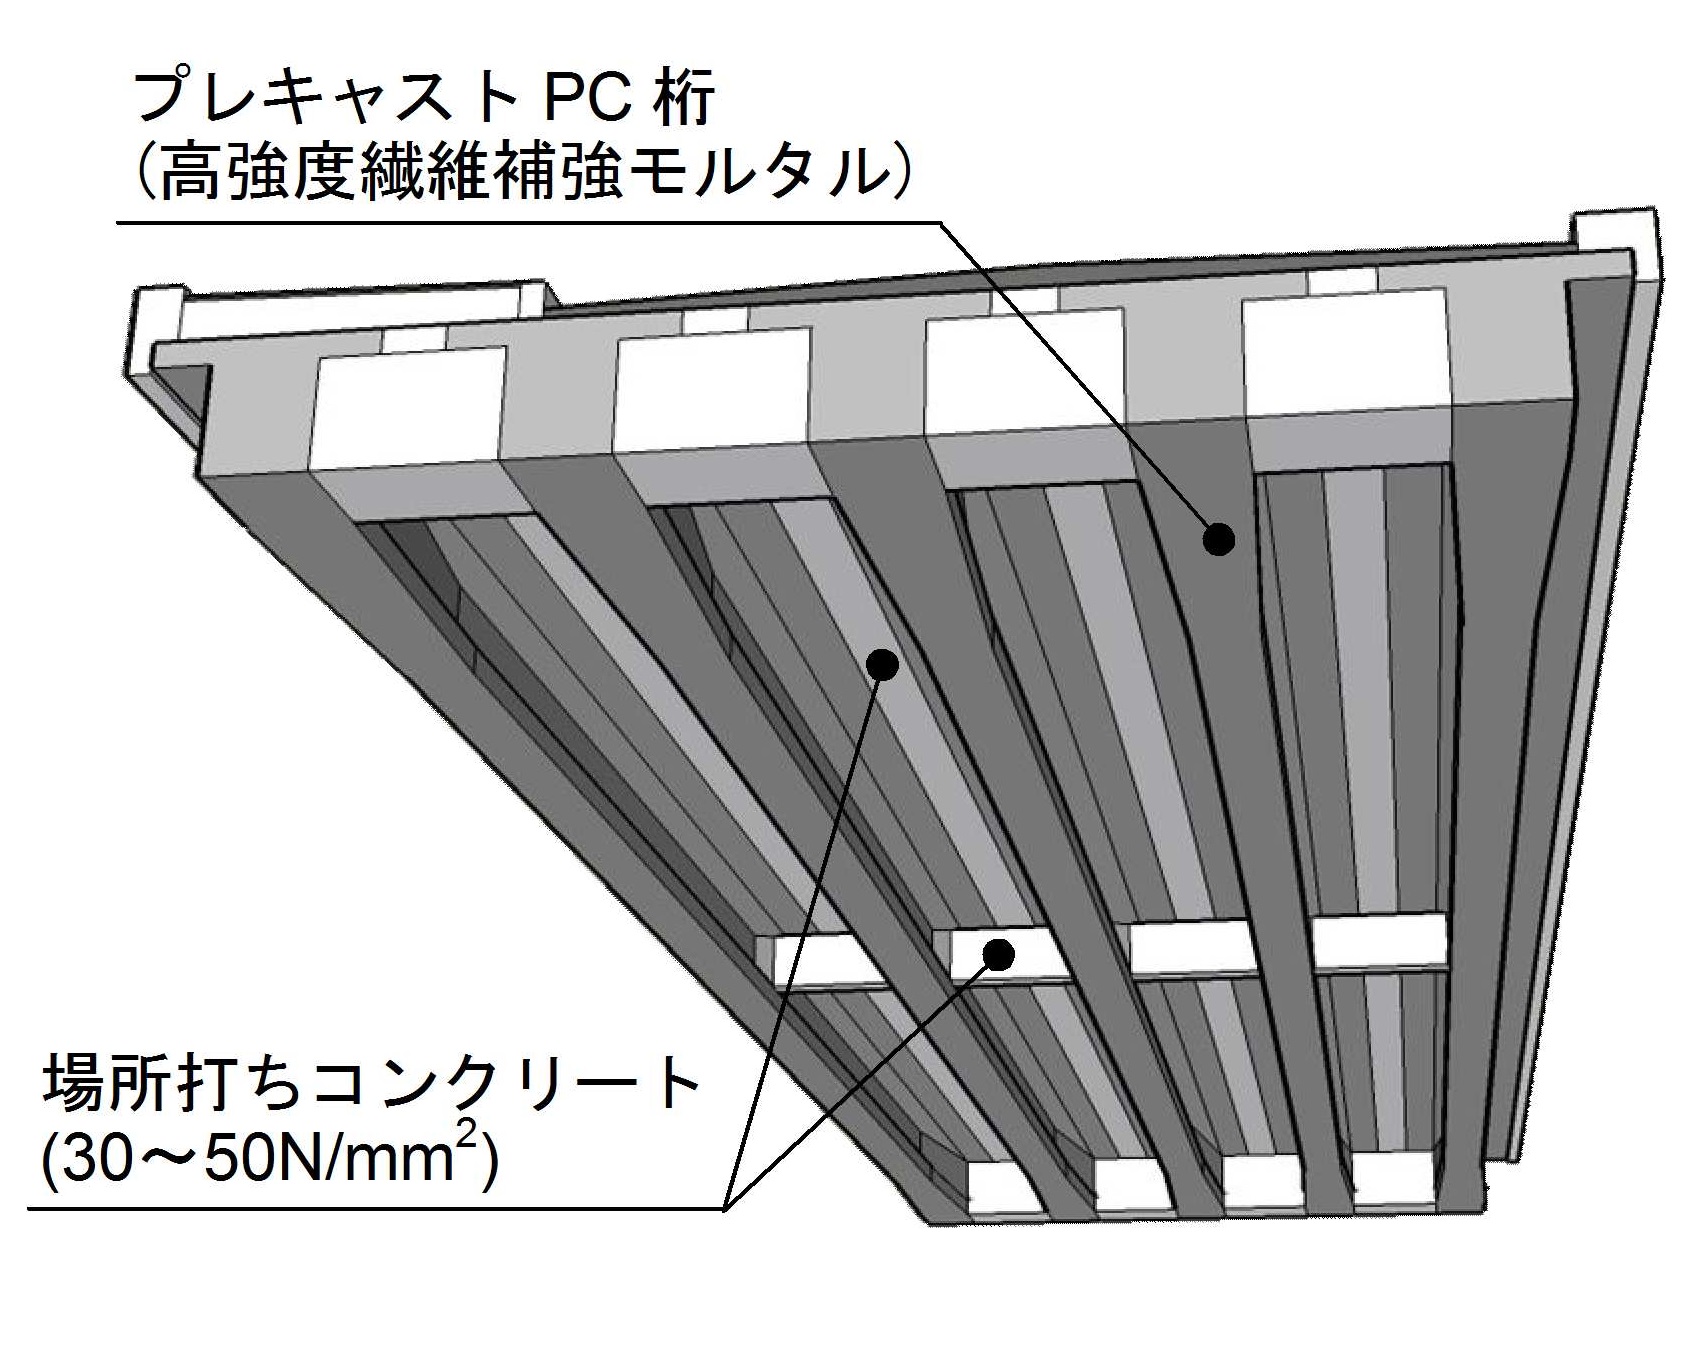 ダックスビーム 高強度繊維補強モルタルを使用した低桁高pc橋 道路構造物ジャーナルnet